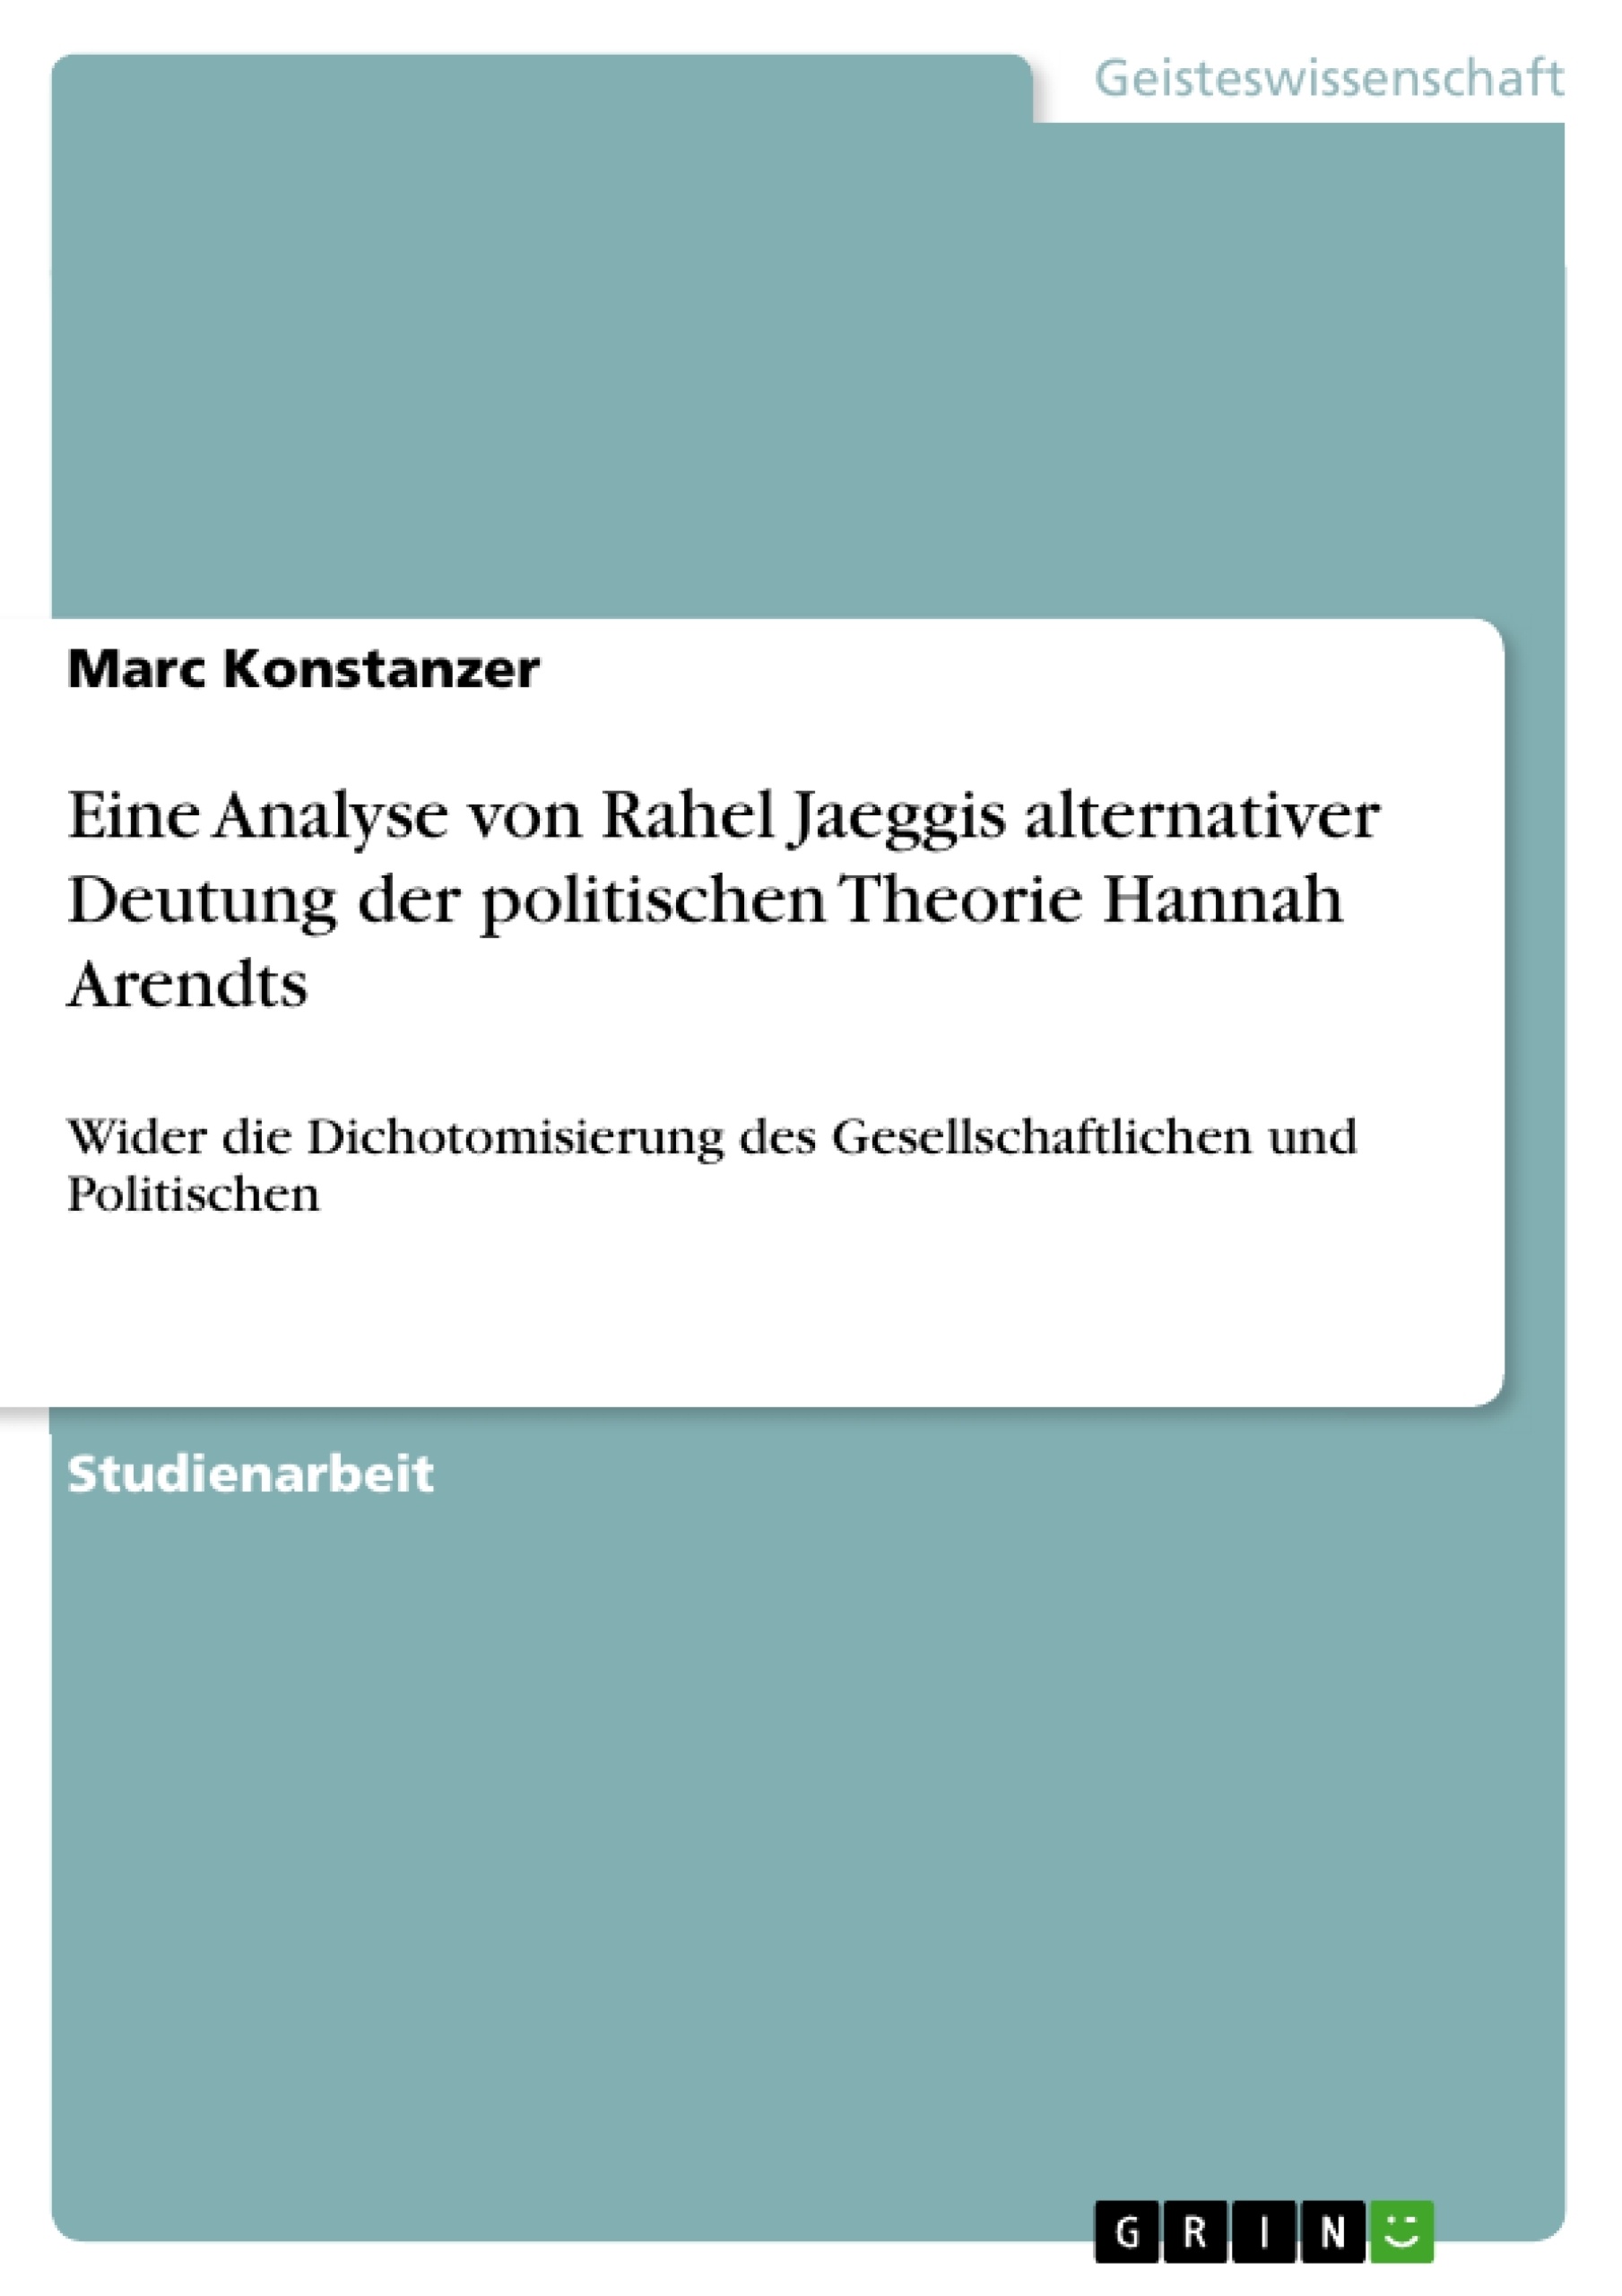 Title: Eine Analyse von Rahel Jaeggis alternativer Deutung der politischen Theorie Hannah Arendts